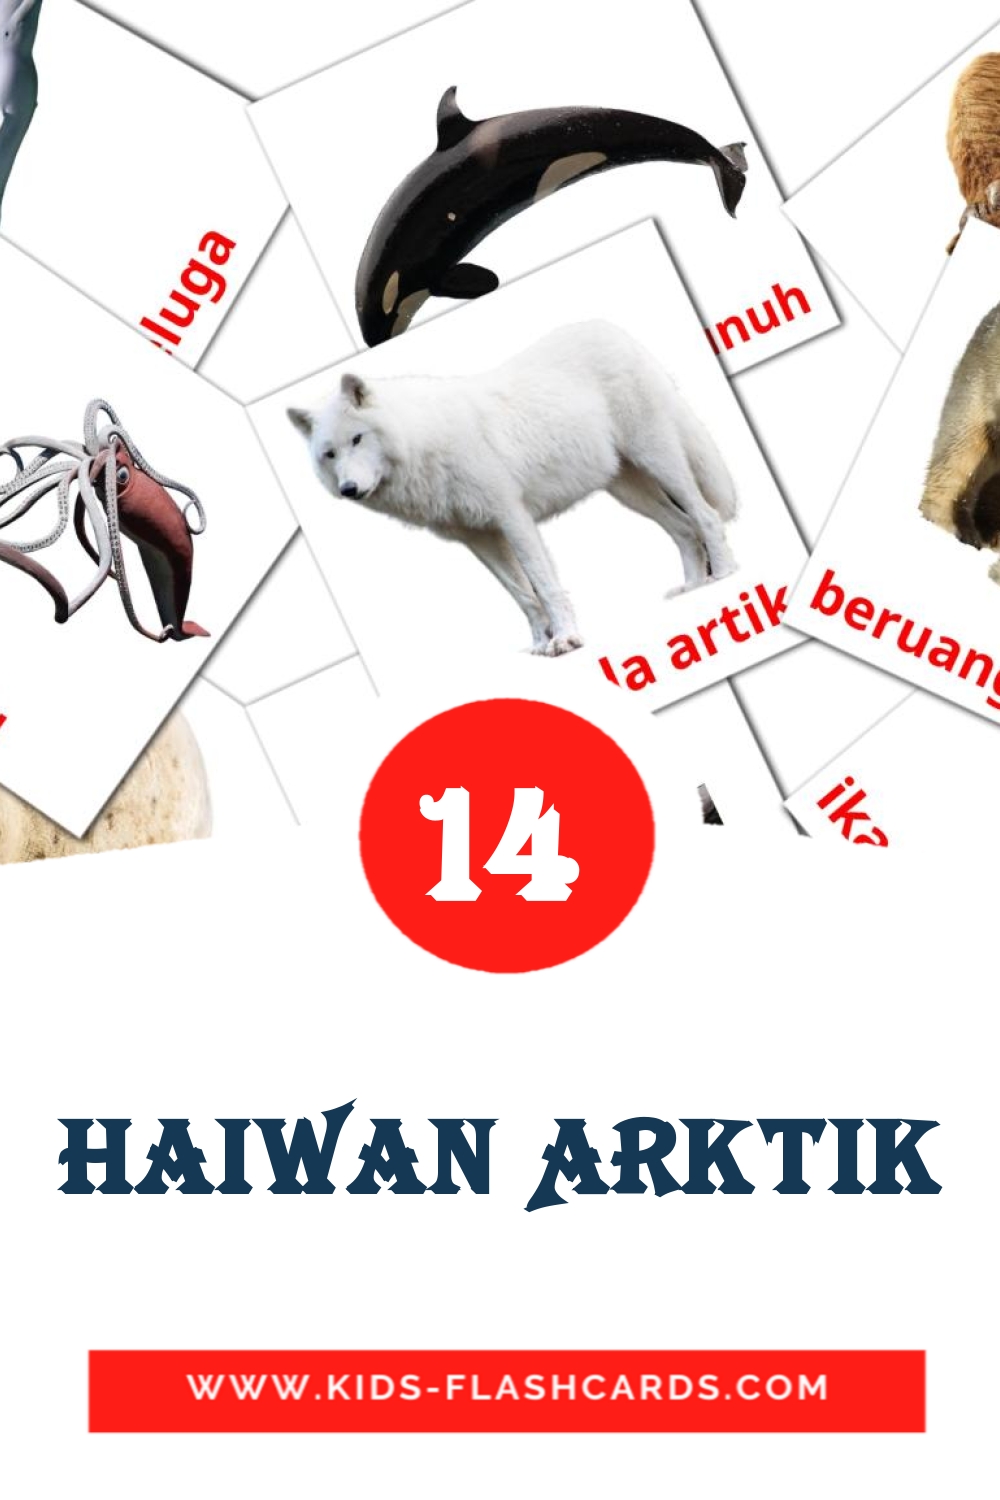 14 Haiwan Arktik fotokaarten voor kleuters in het malay